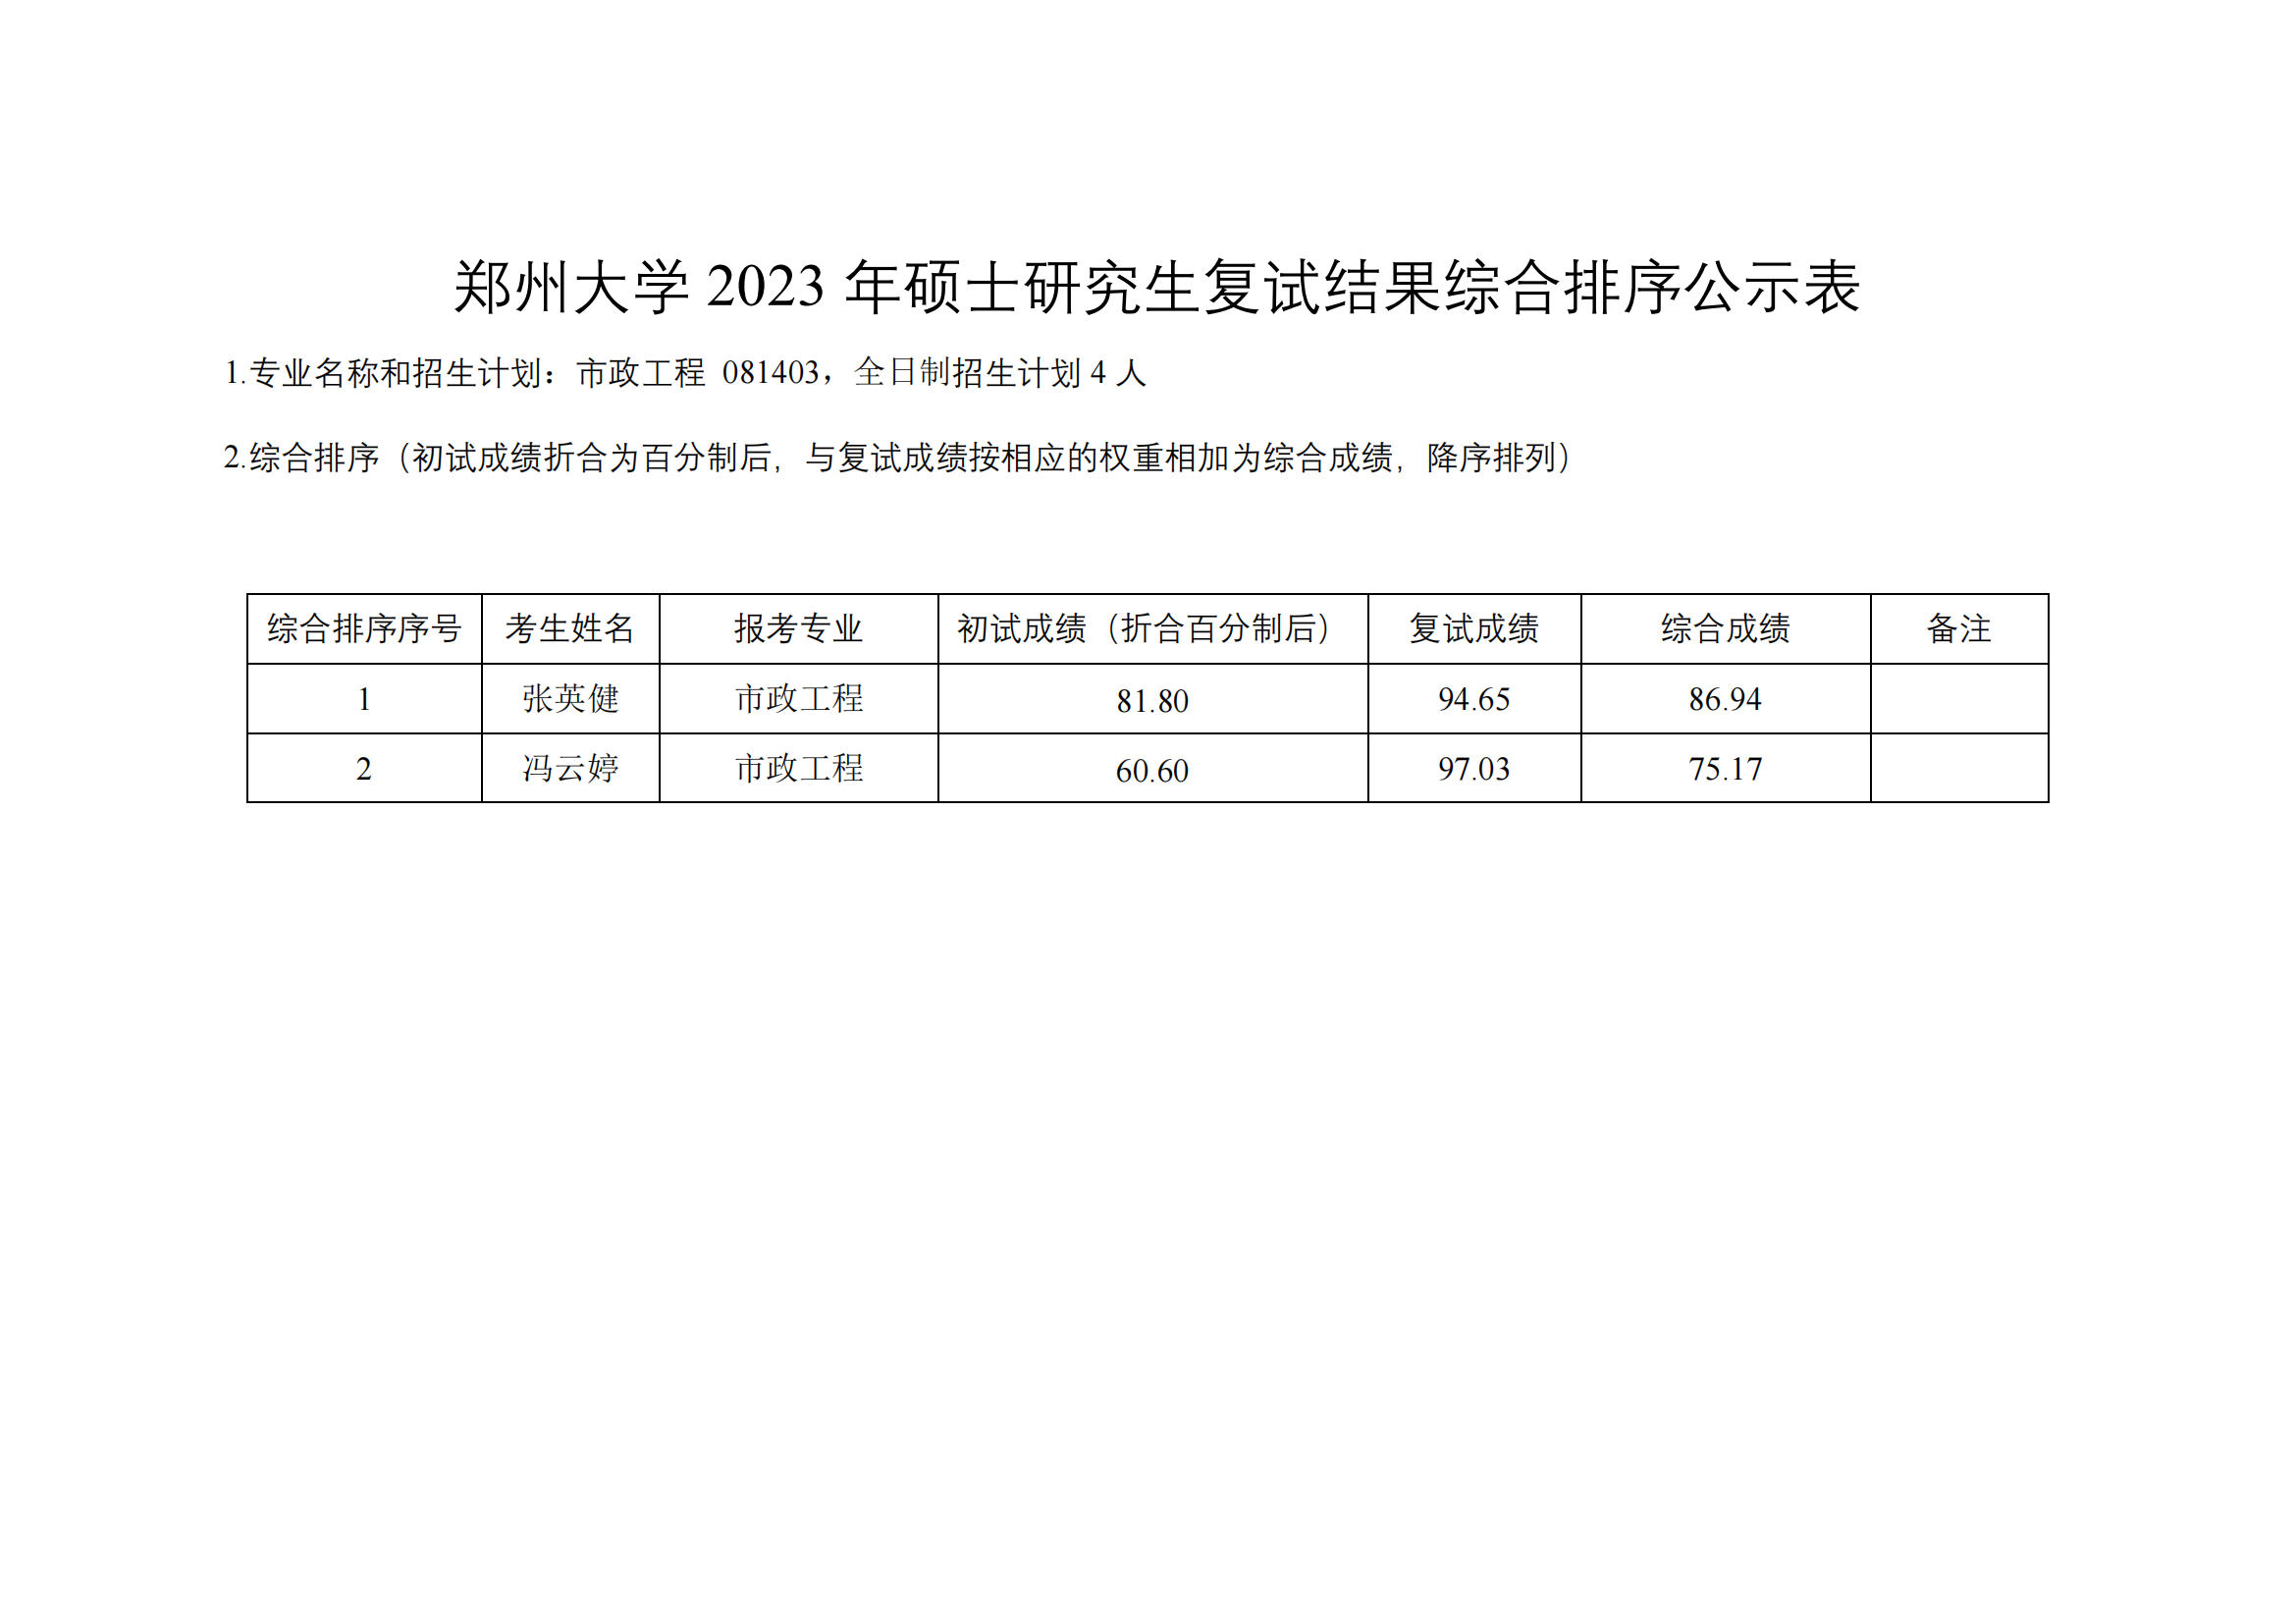 郑州大学水利与土木工程学院（原水利科学与工程学院专业方向）－2023年一志愿硕士研究生复试结果综合排序公示表-20230402(2)_02.png